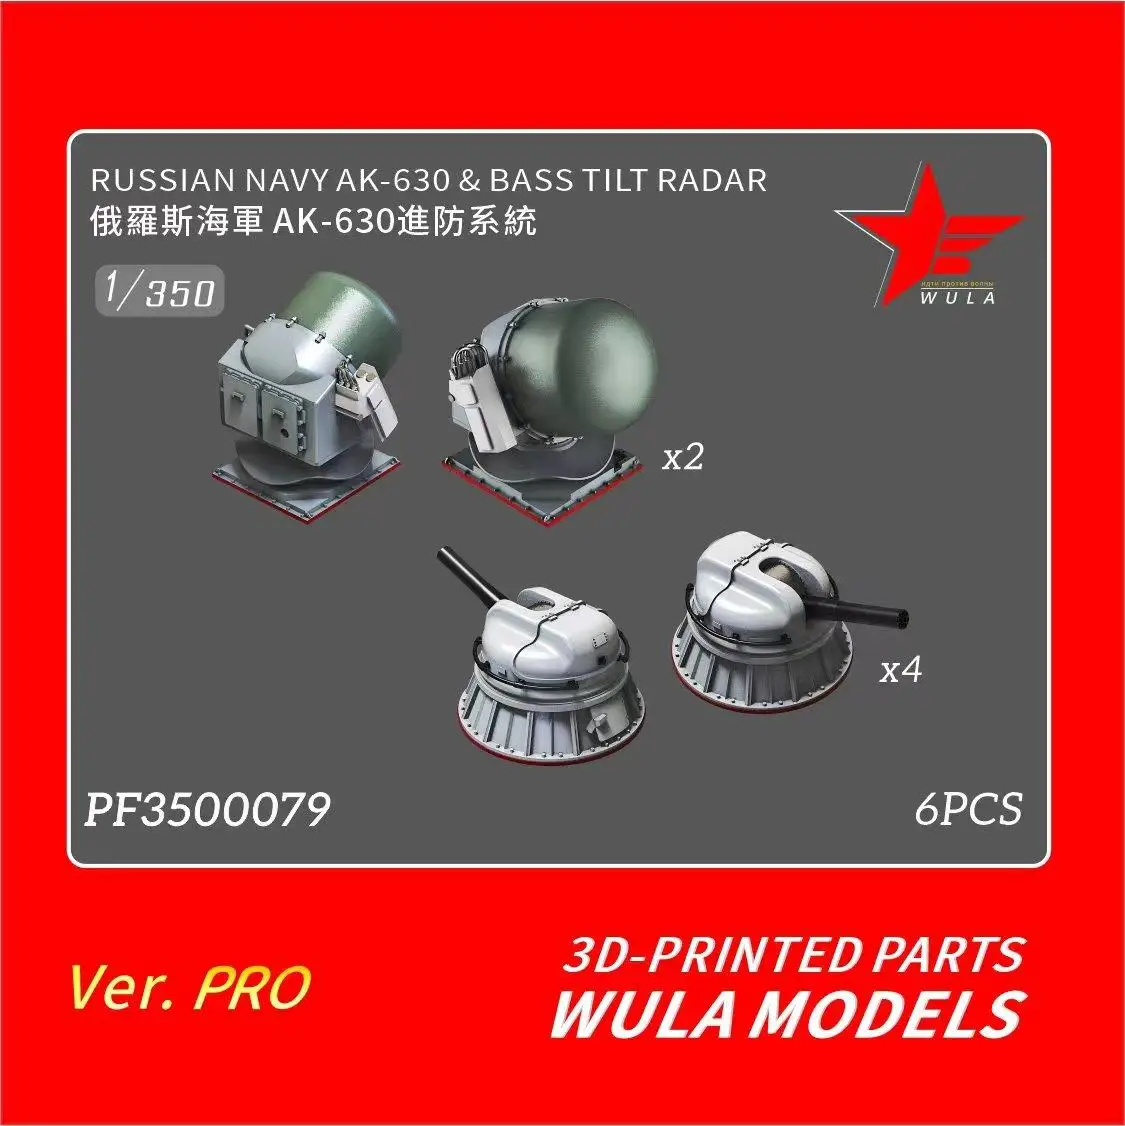 

Модели WULA PF3500079, масштаб 1/350, русский, темно-синий, фотоловушка, наклонный радар, детали с 3d-печатью